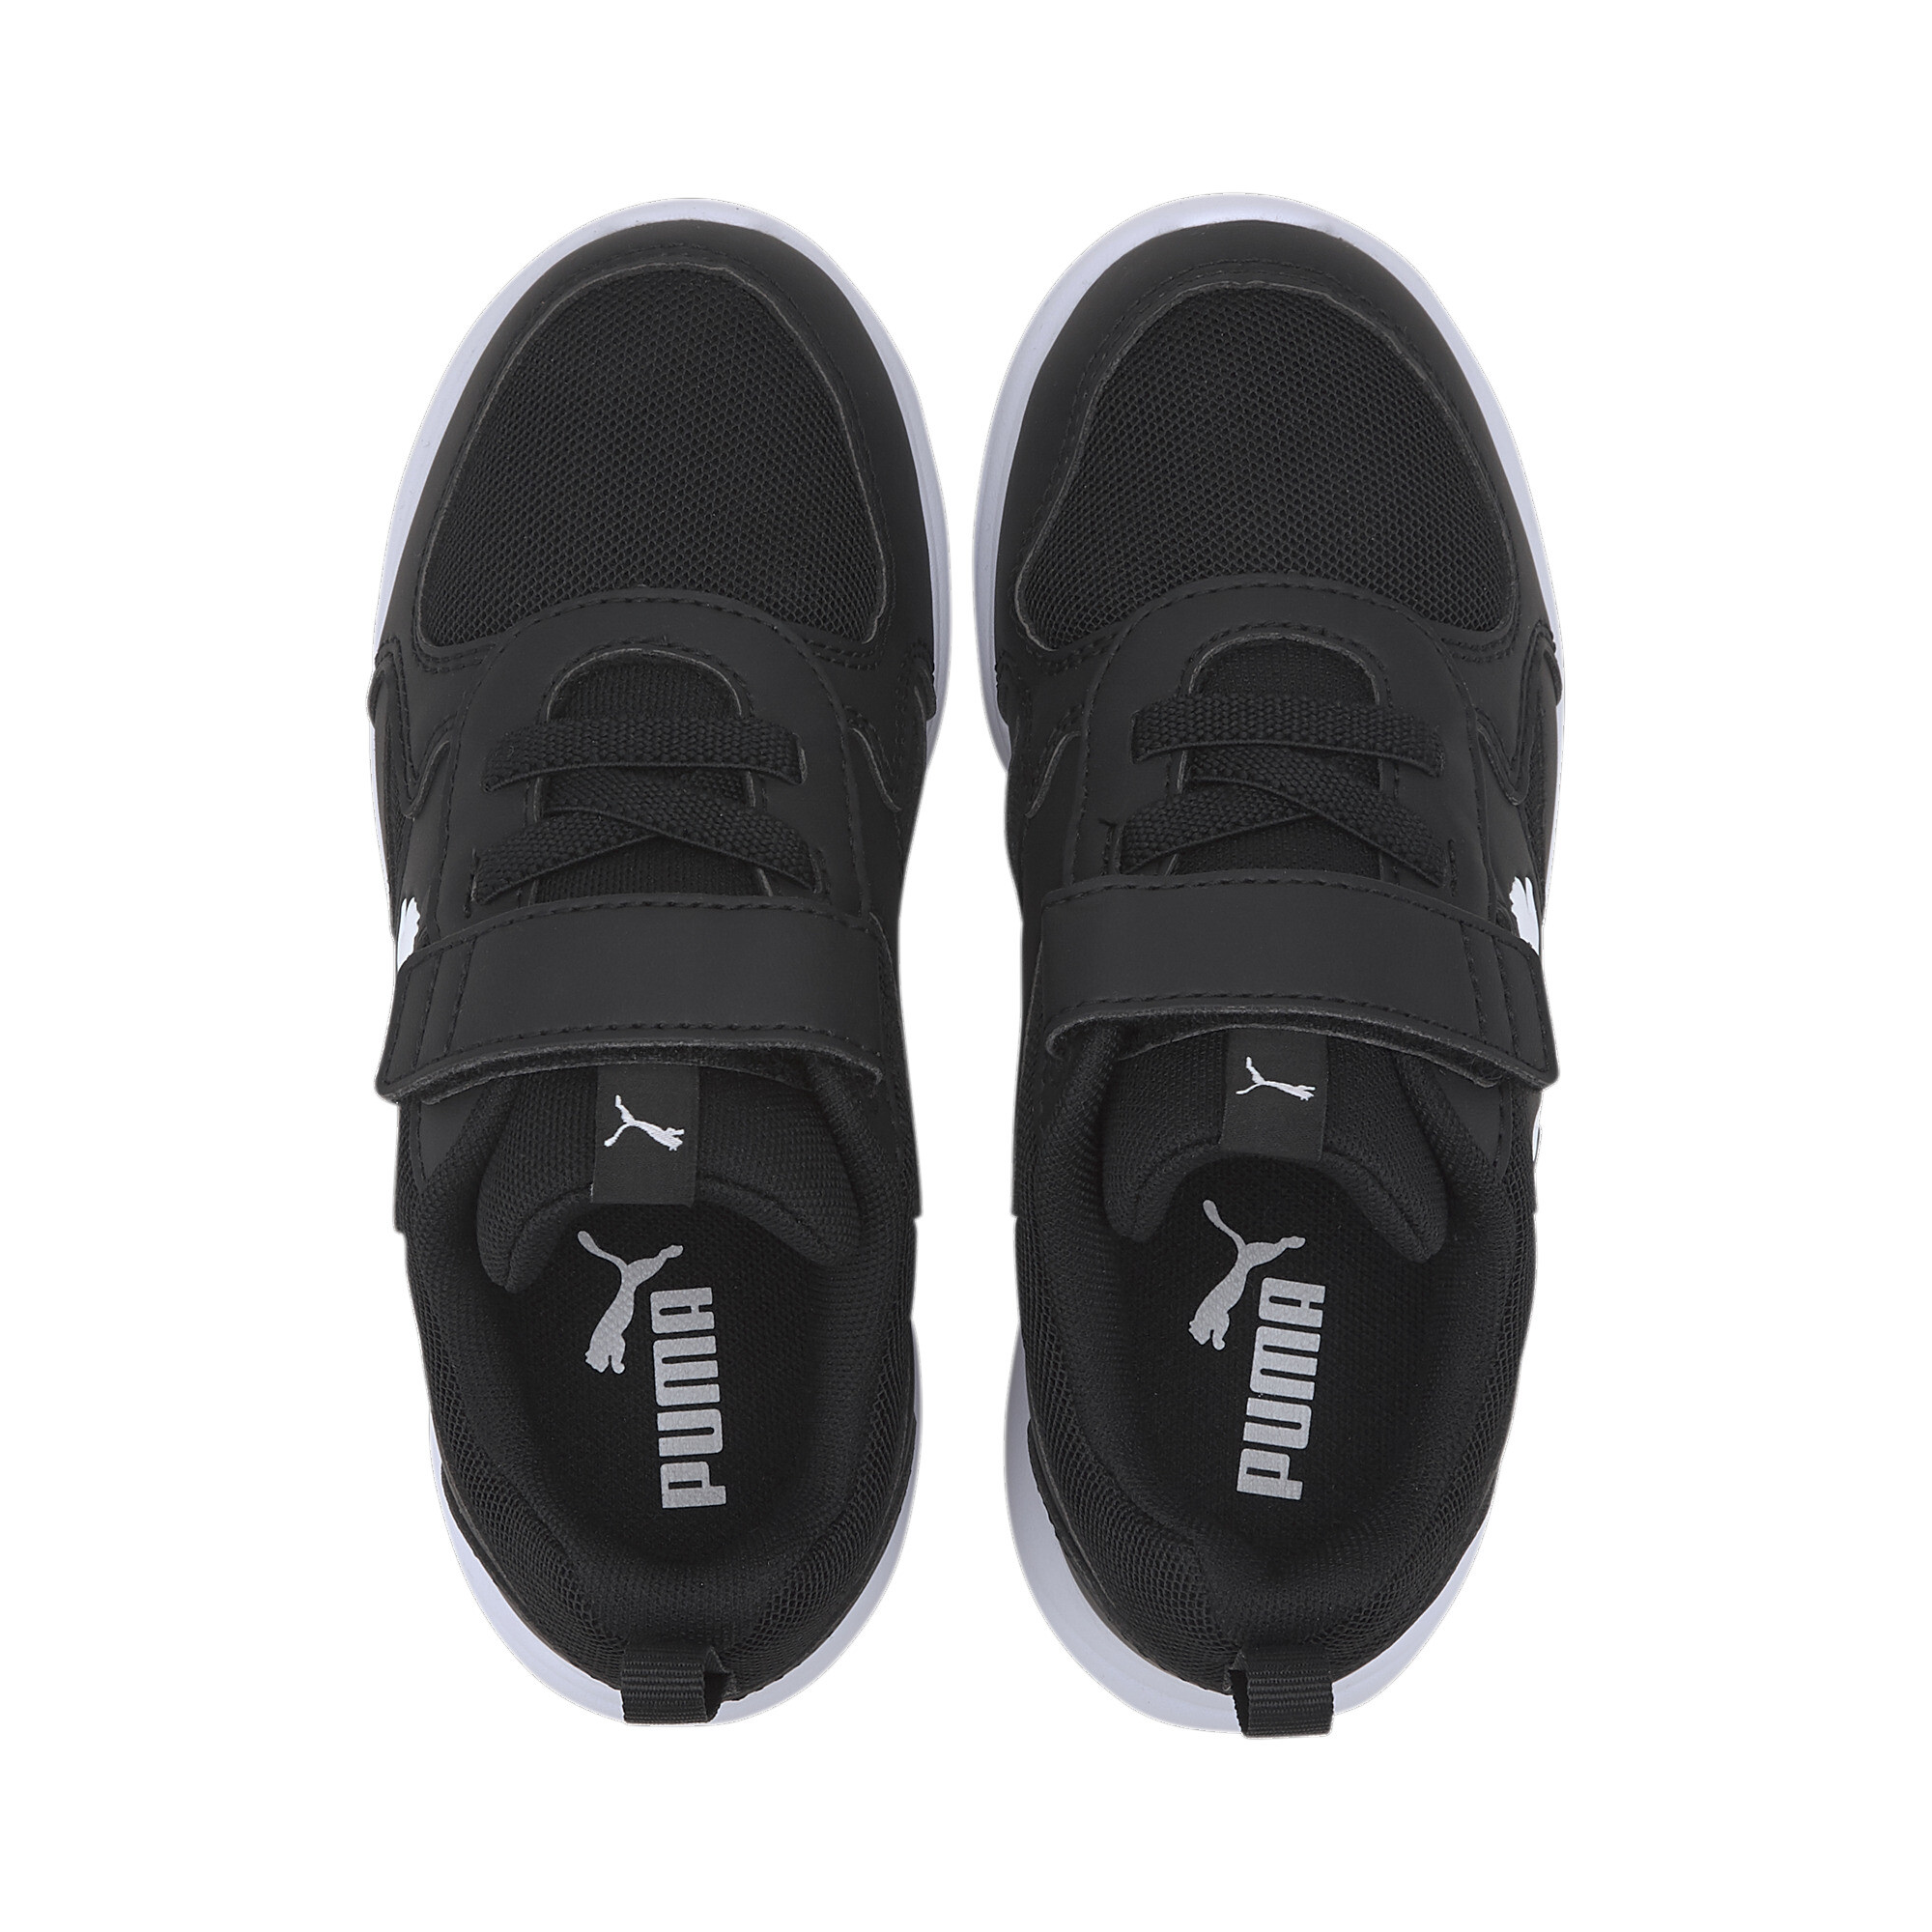 Kids' PUMA Fun Racer Sneakers In Black, Size EU 28